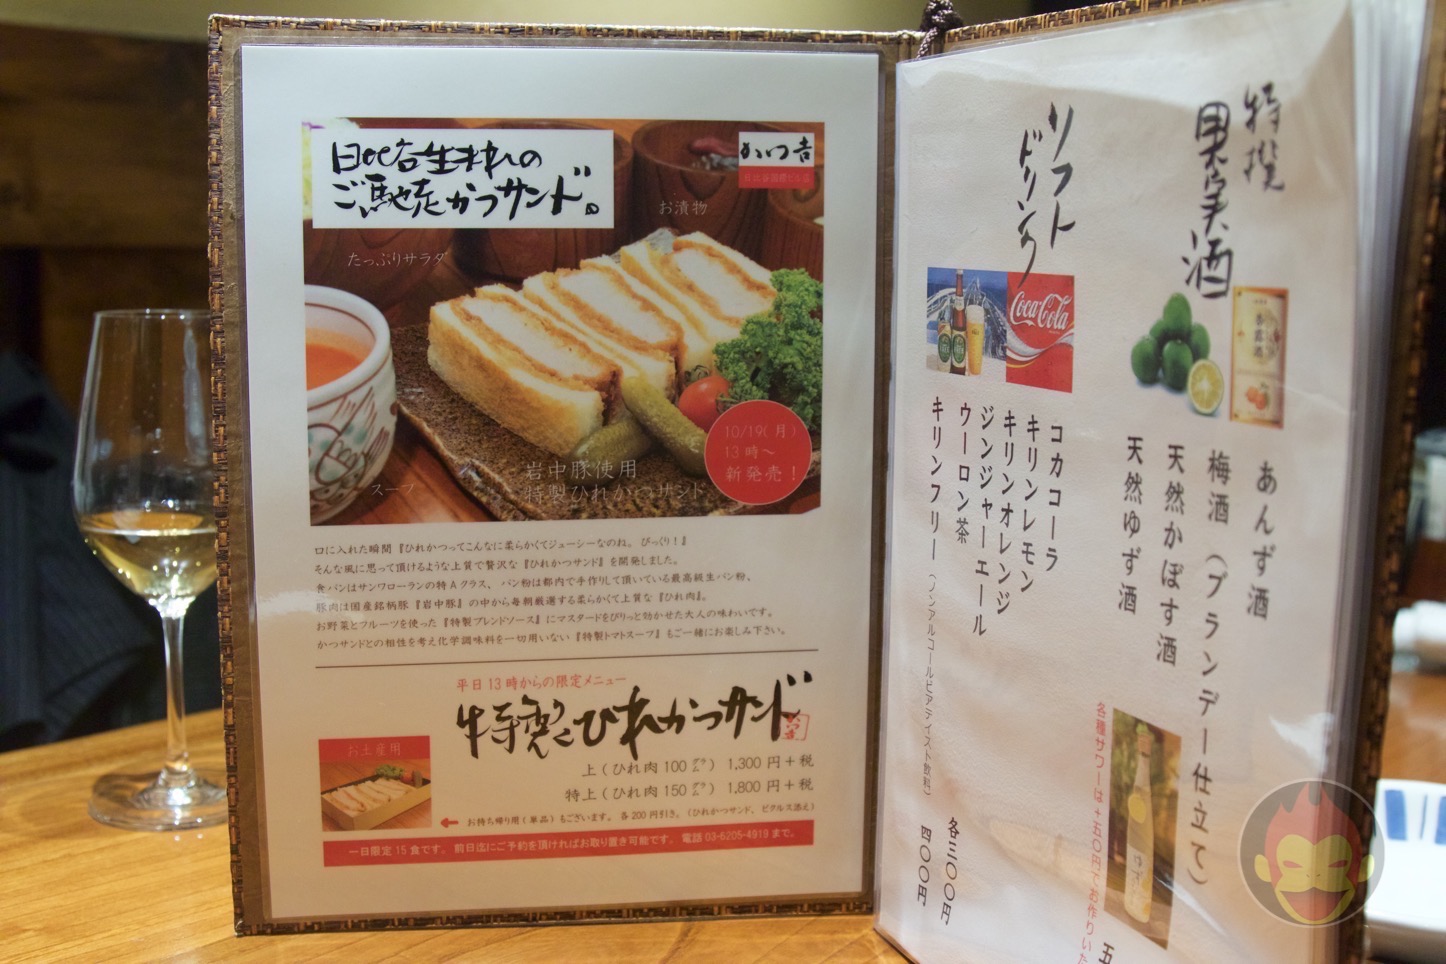 Katsu-Kichi-Katsu-Sandwich-08.jpg